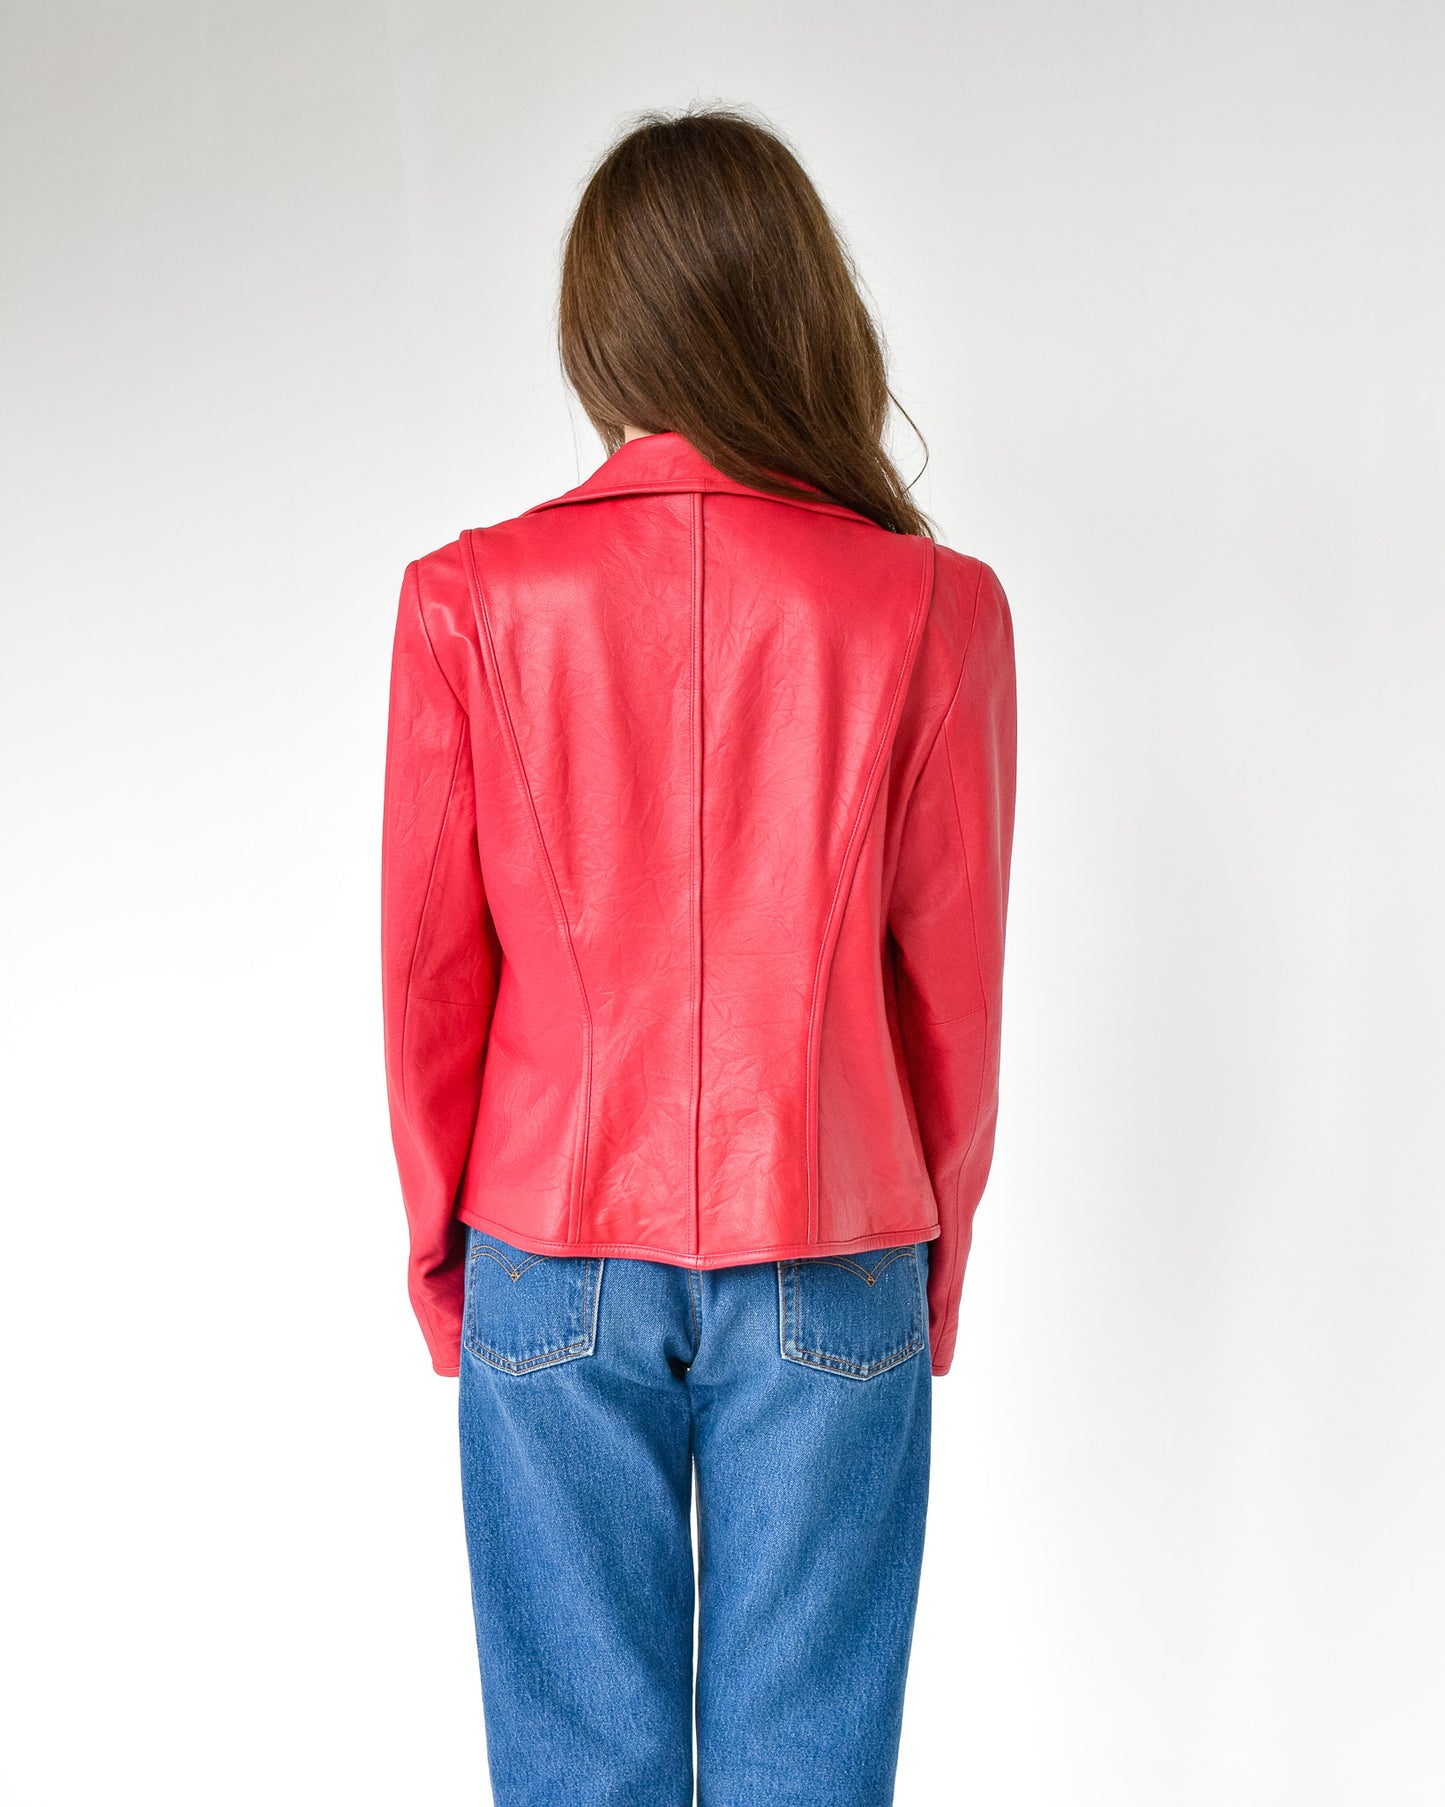 Poppy Leather Paneled Jacket (M)